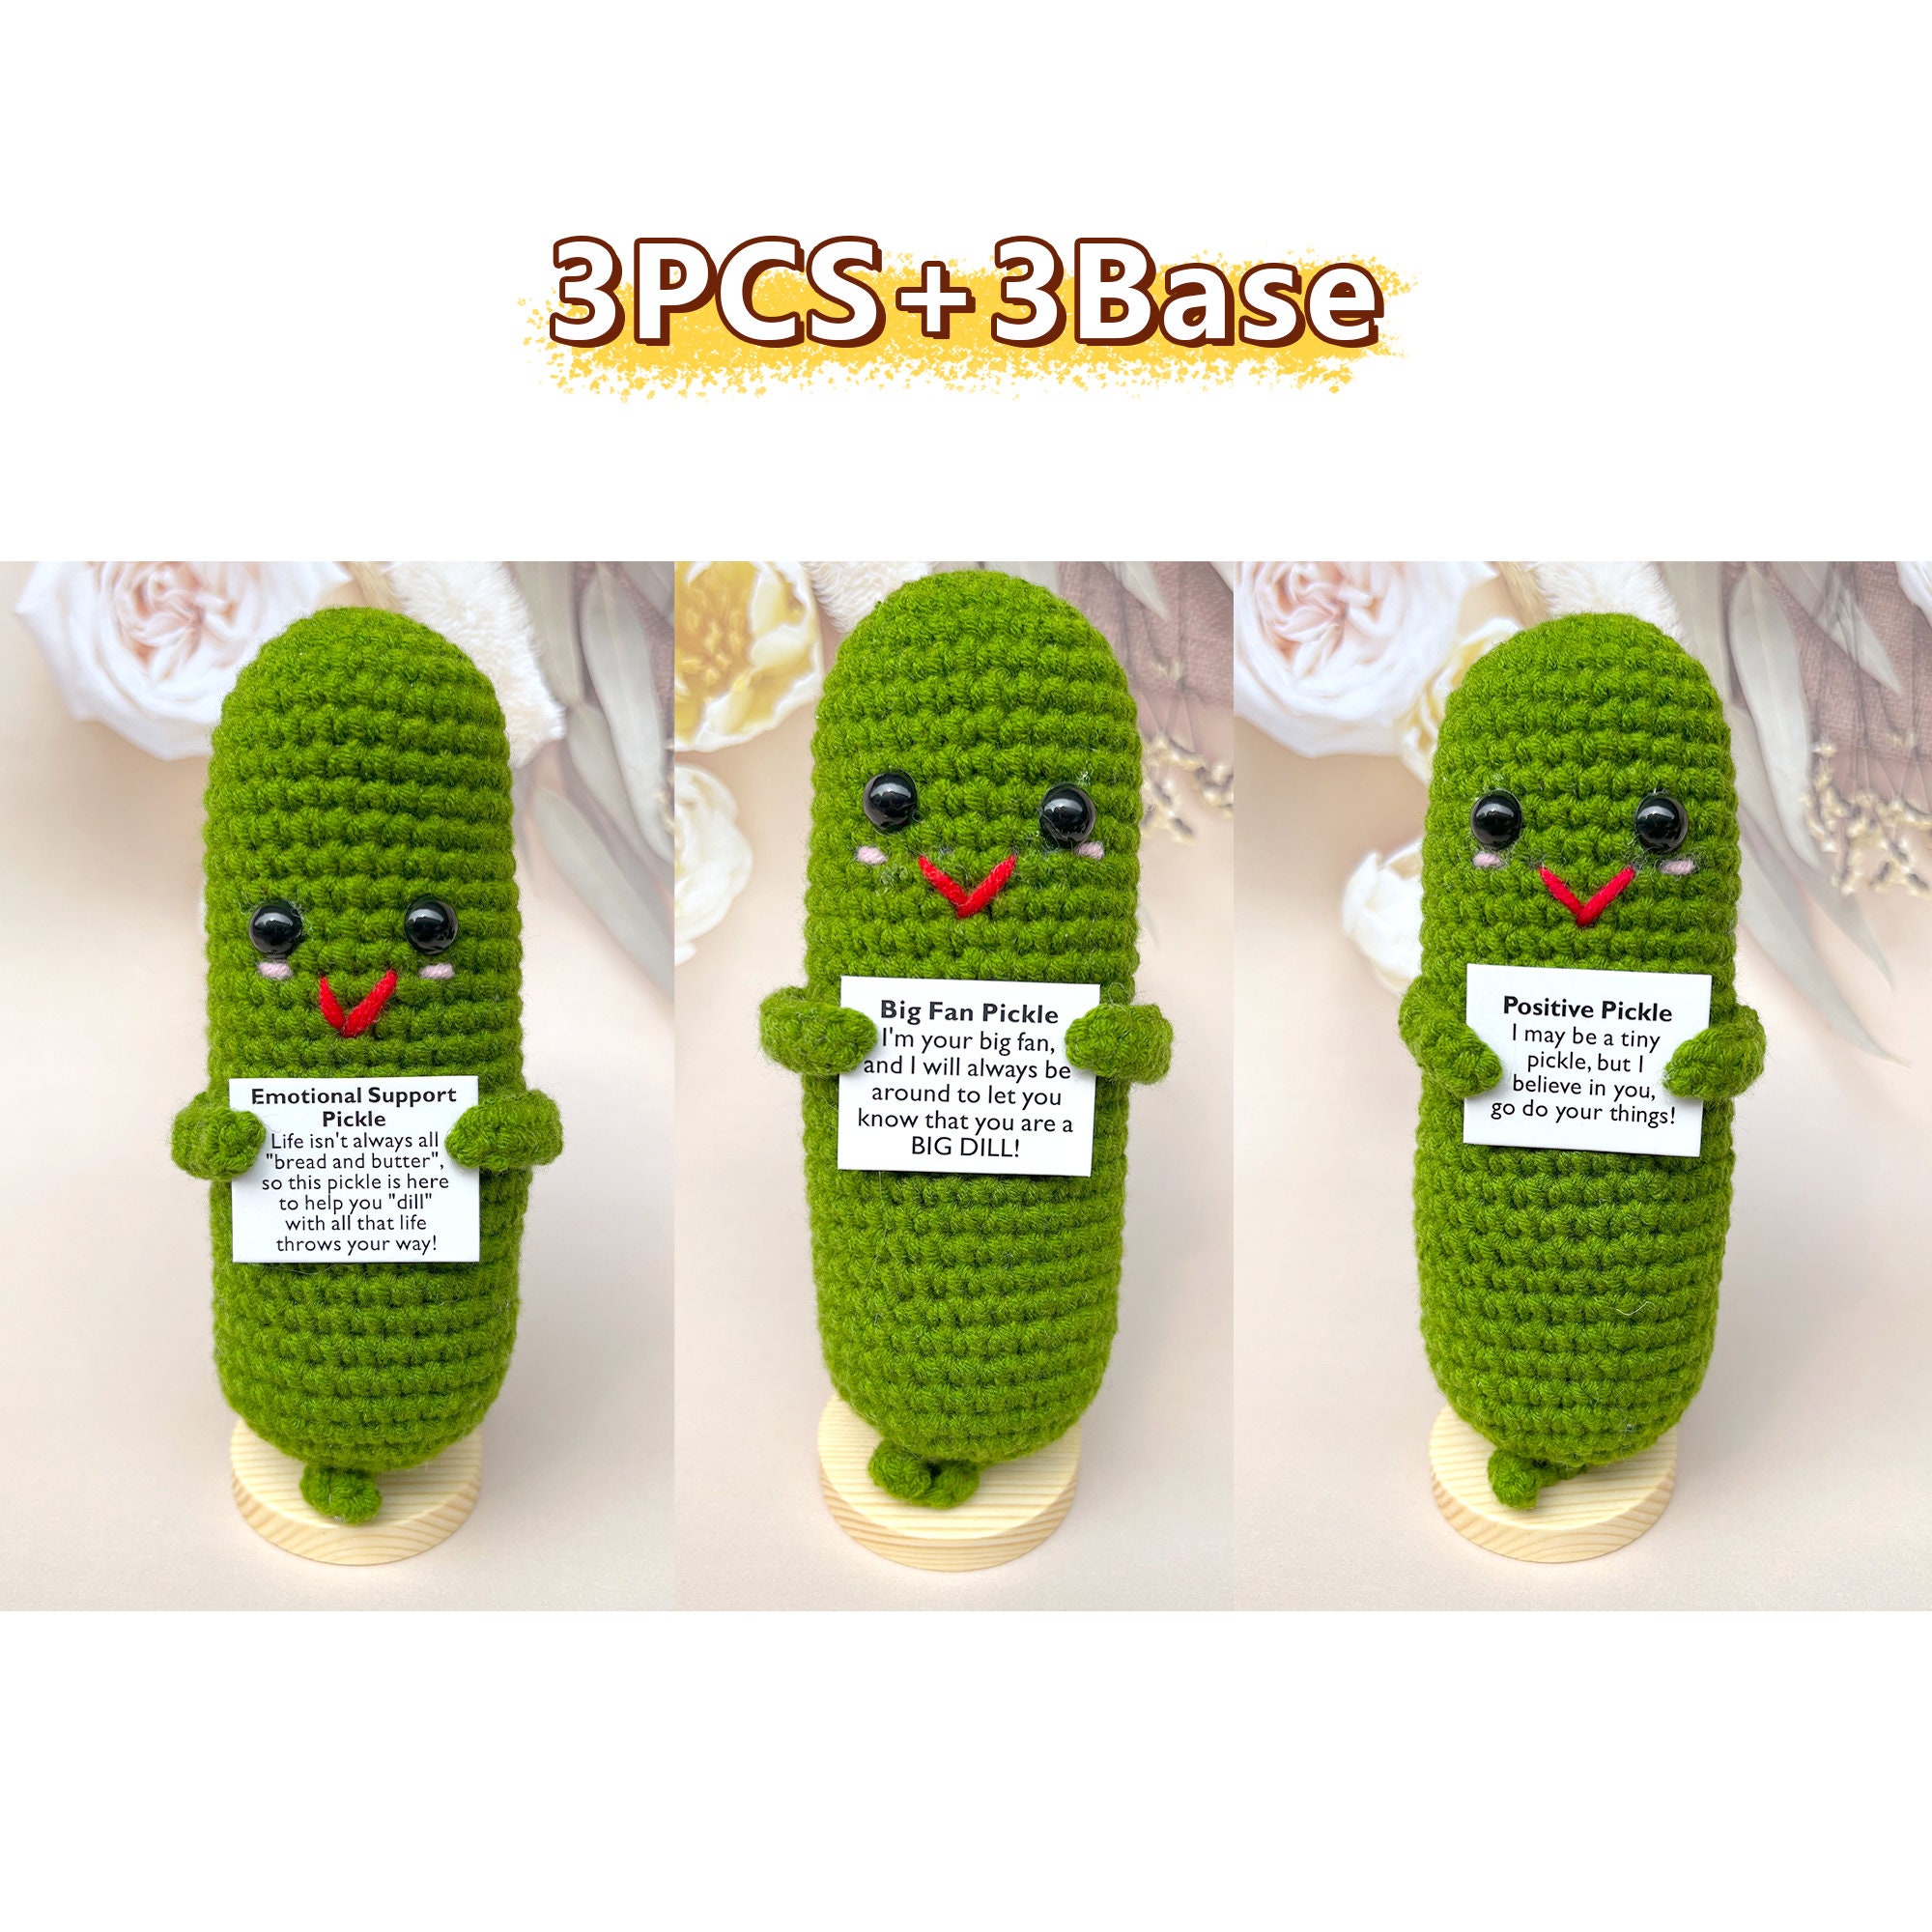 Emotional Support Pickle,positive Pickle,big Fan Pickle,handmade